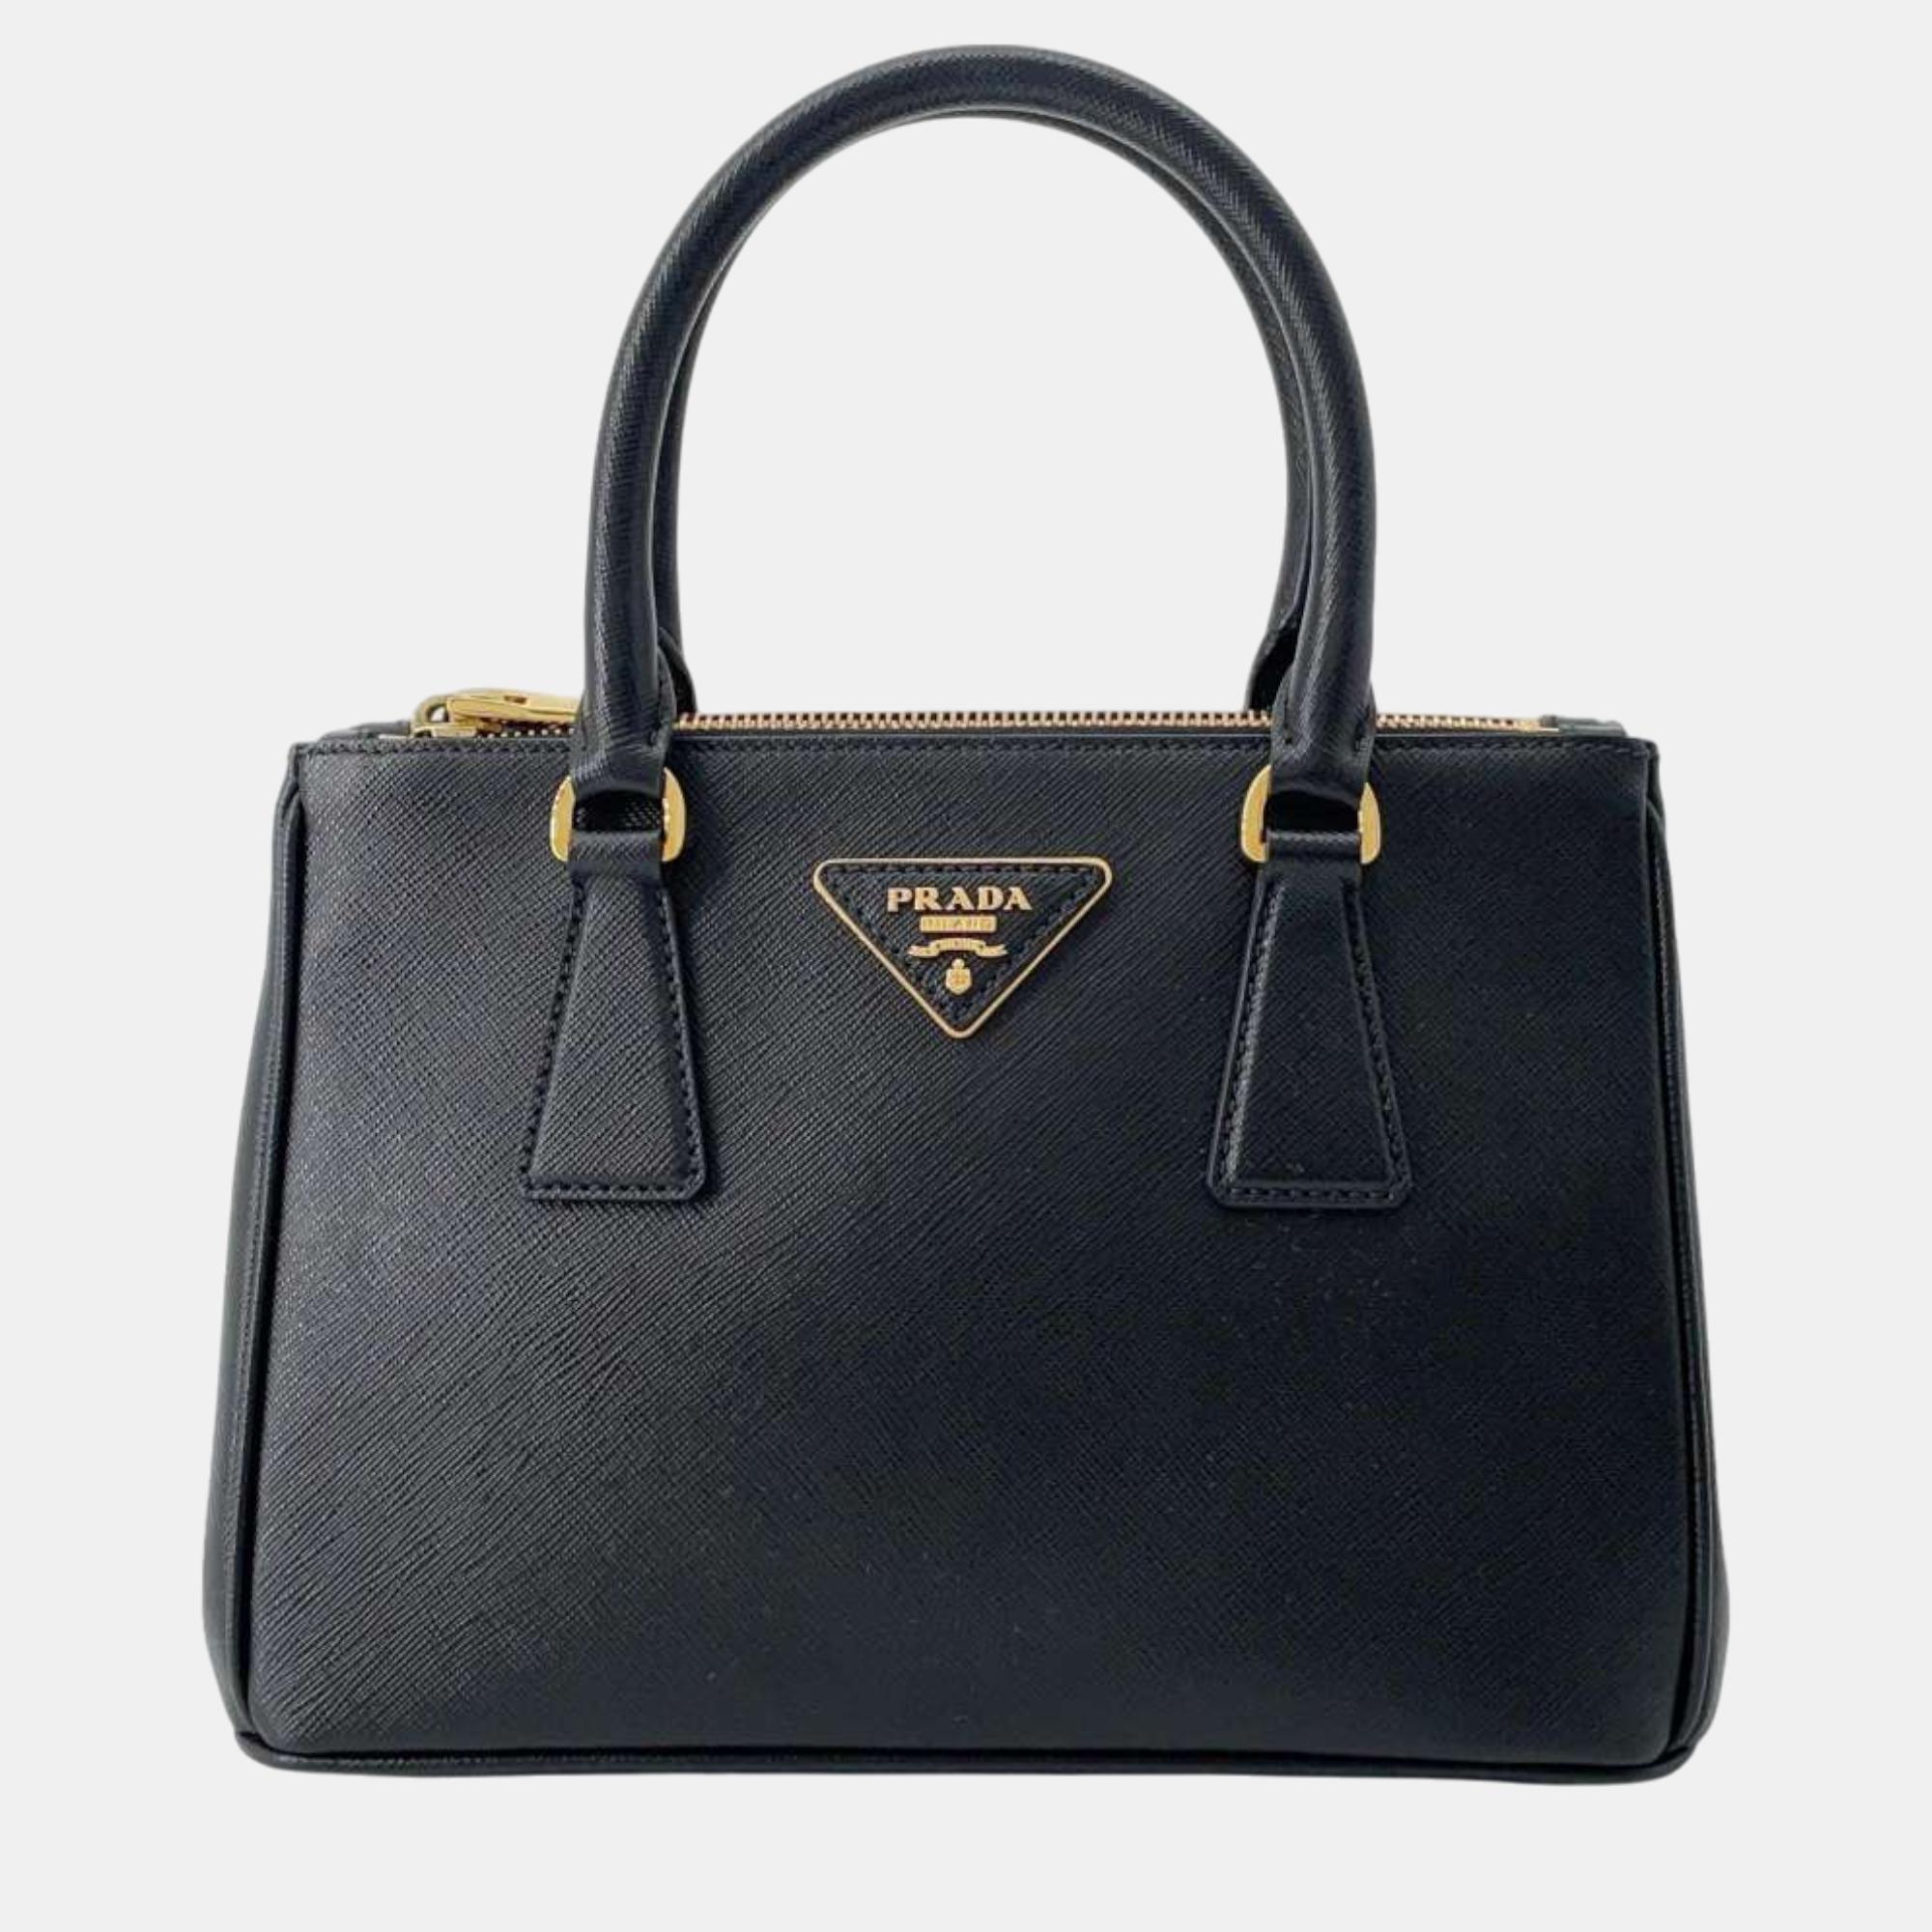 Pre-owned Prada Black Saffiano Leather Galleria Handbag